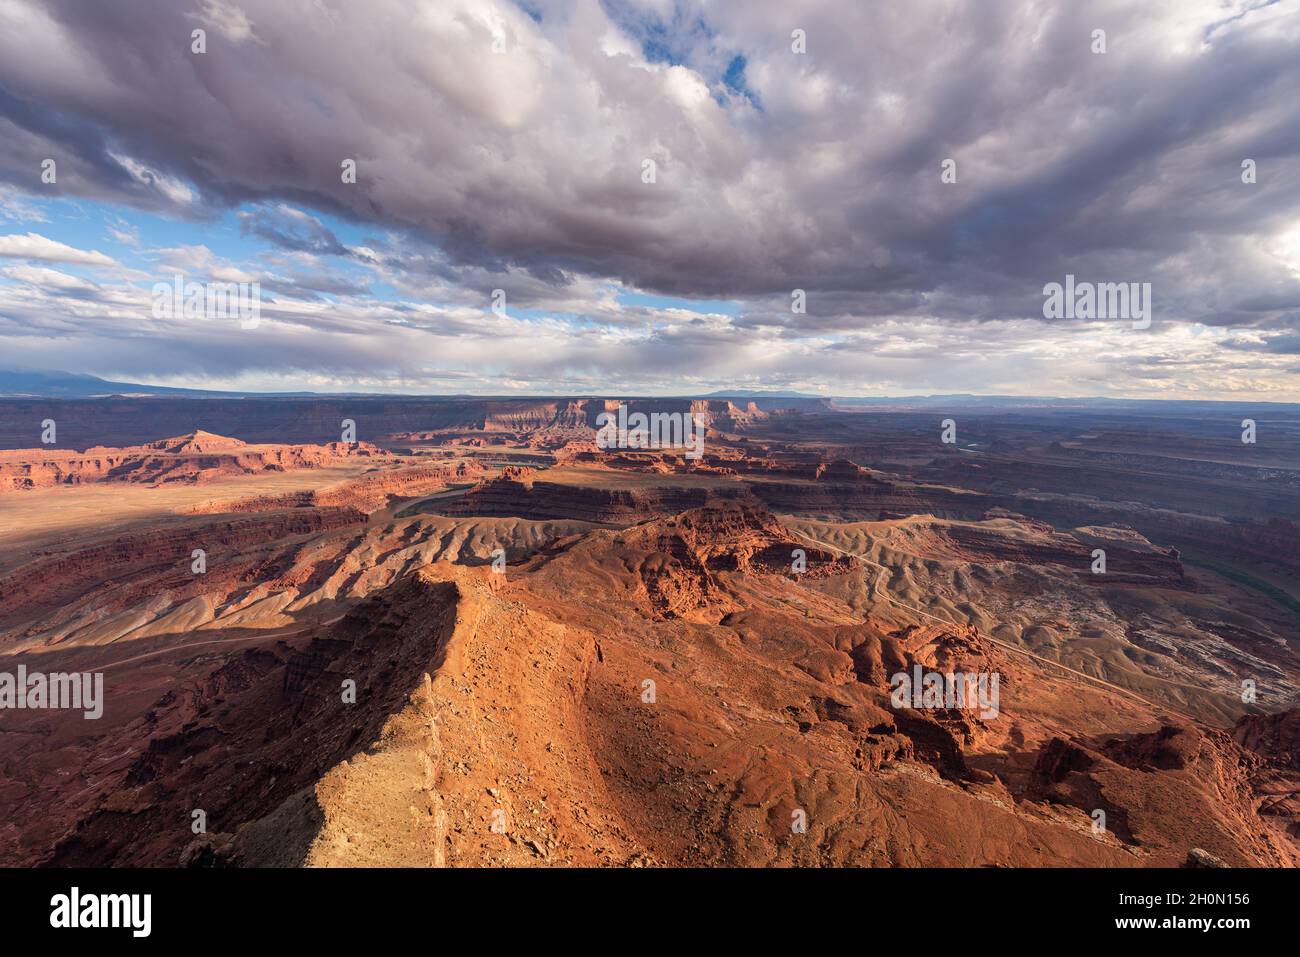 Incredibili vedute mozzafiato del paesaggio desertico del Canyon Lands National Park, Utah Foto Stock